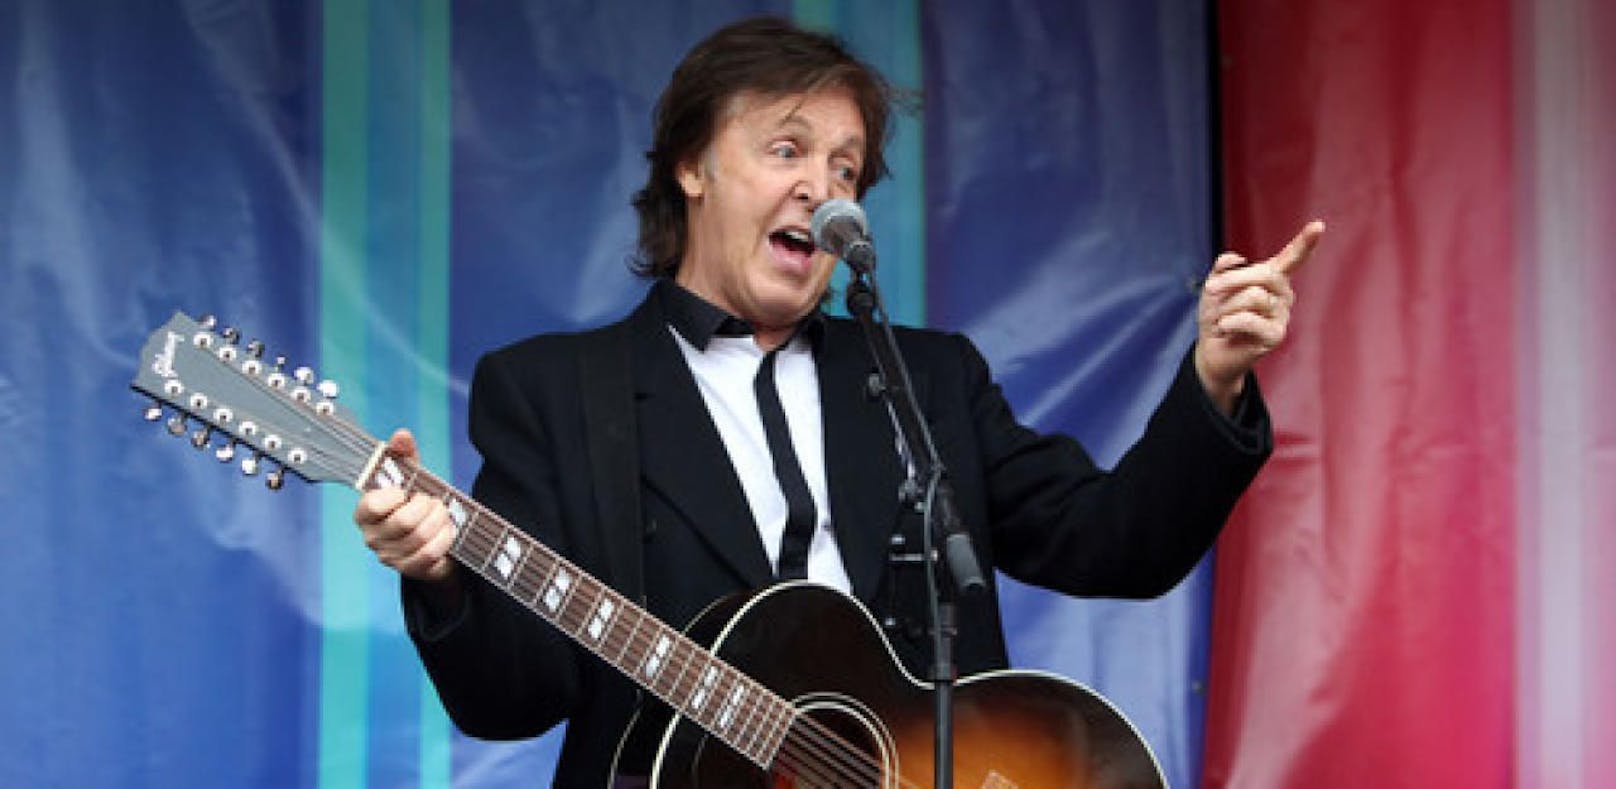 Paul McCartney durch Fans mit Handys verärgert